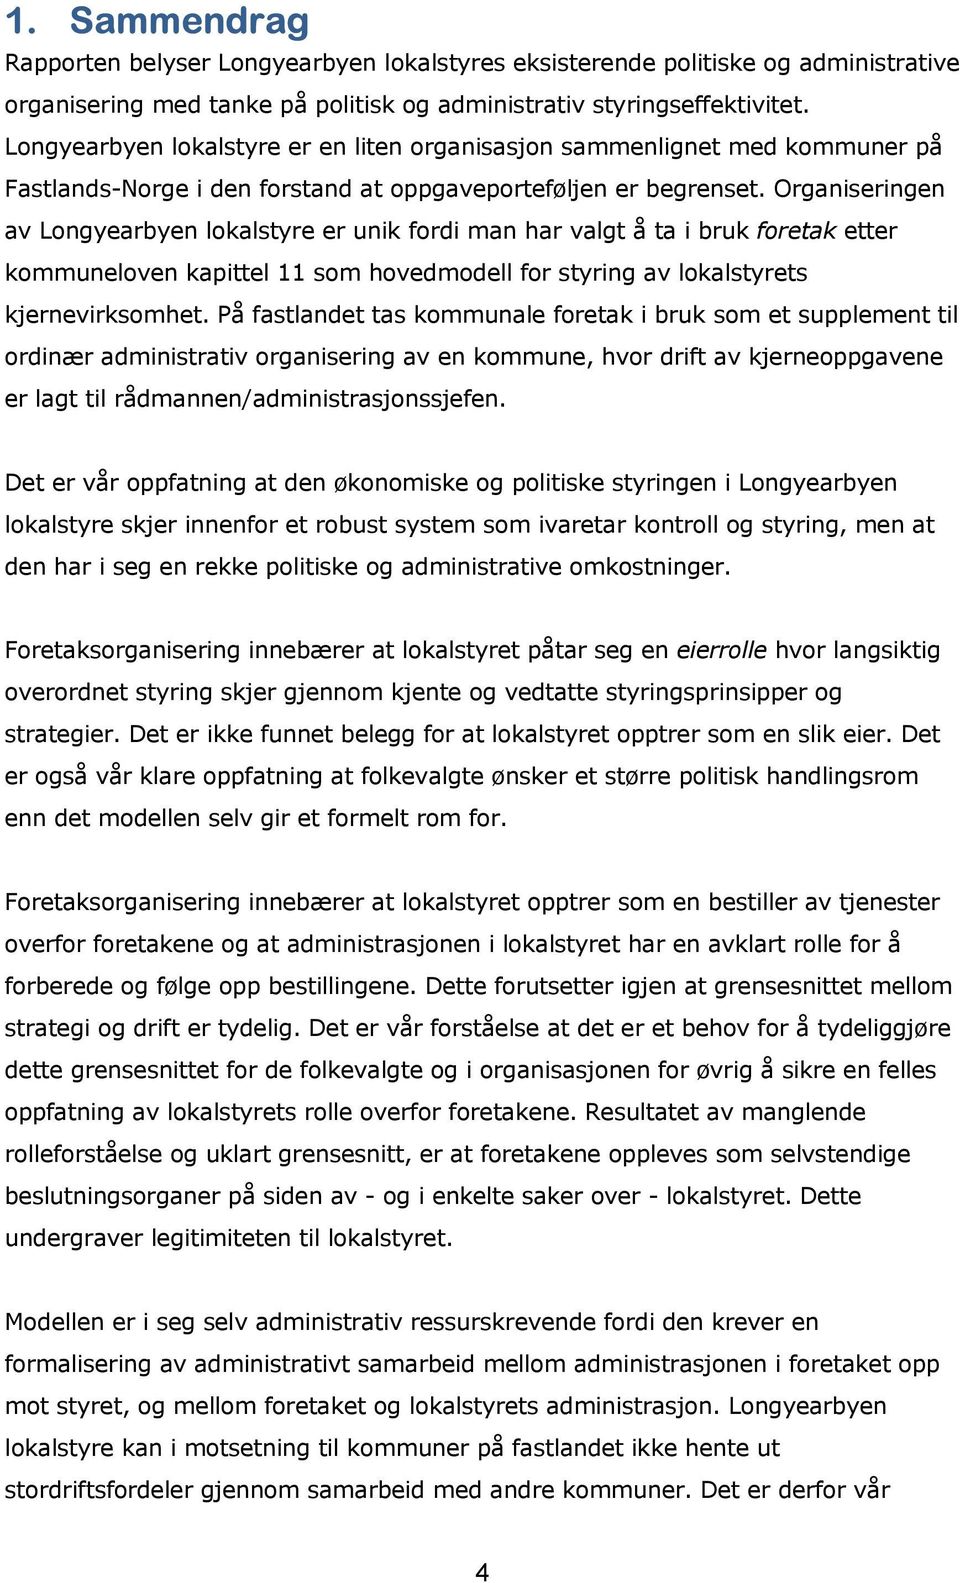 Organiseringen av Longyearbyen lokalstyre er unik fordi man har valgt å ta i bruk foretak etter kommuneloven kapittel 11 som hovedmodell for styring av lokalstyrets kjernevirksomhet.